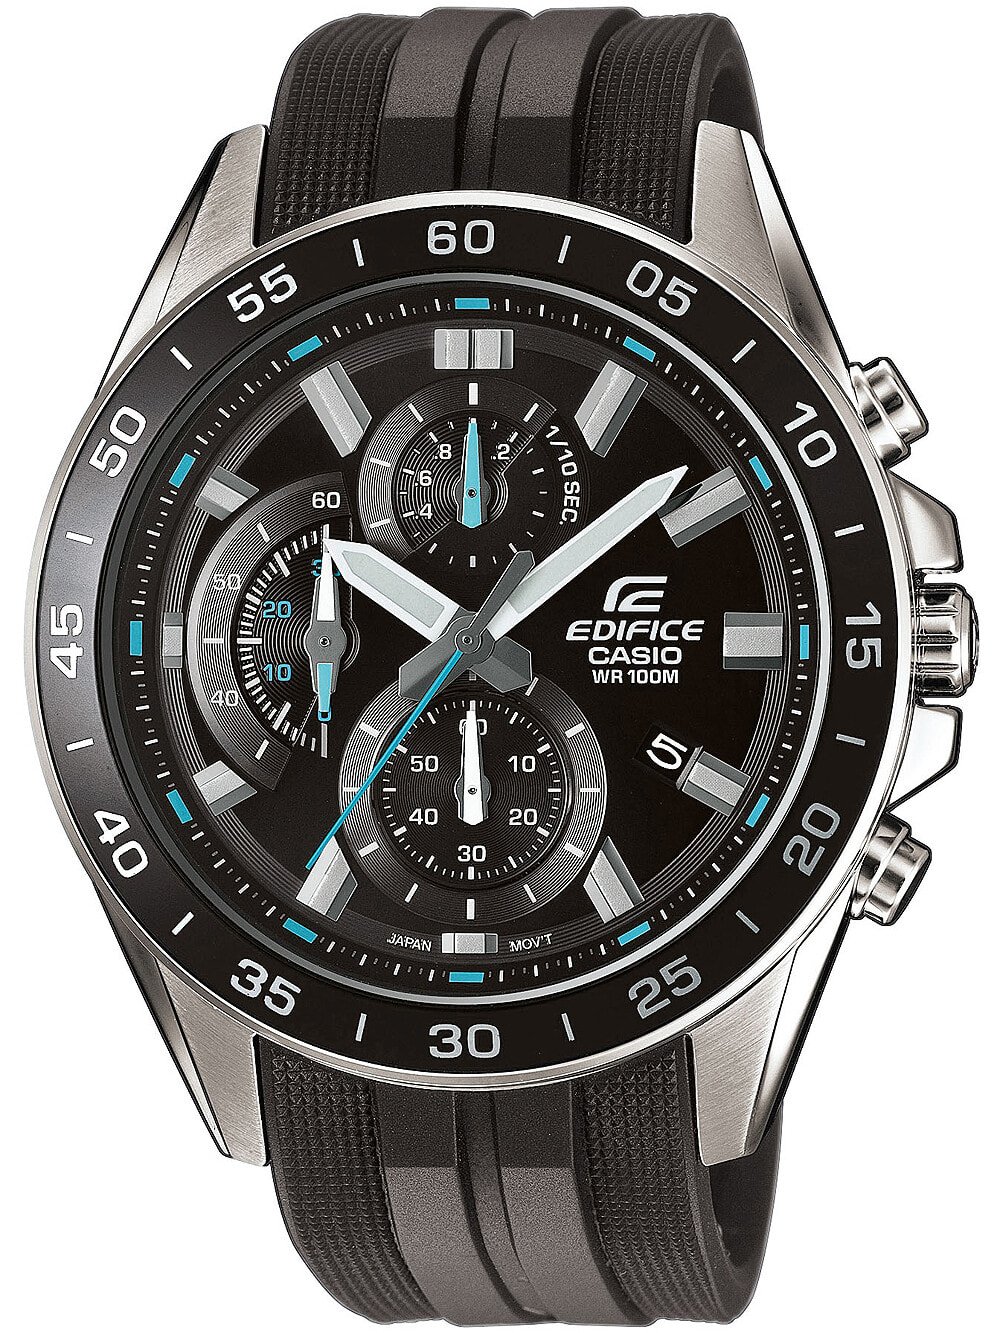 Мужские наручные часы с черным силиконовым ремешком Casio EFV-550P-1AVUEF Edifice Chronograph 47mm 10ATM